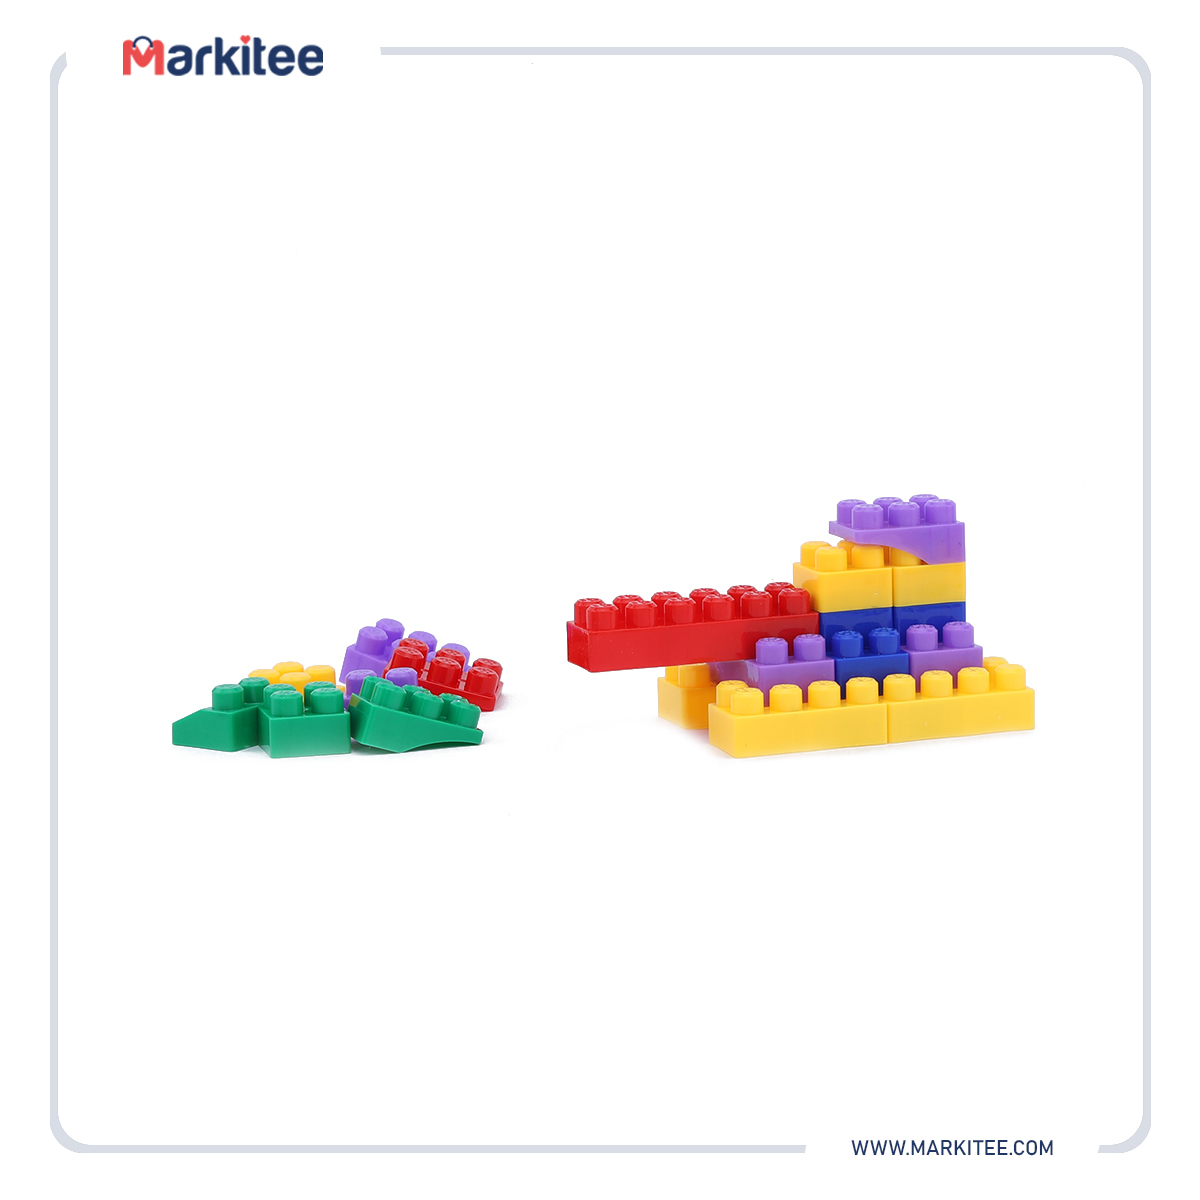 ماركيتي-markitee-20220531093458972_Markitee-Toys-Ty-346(4).jpg